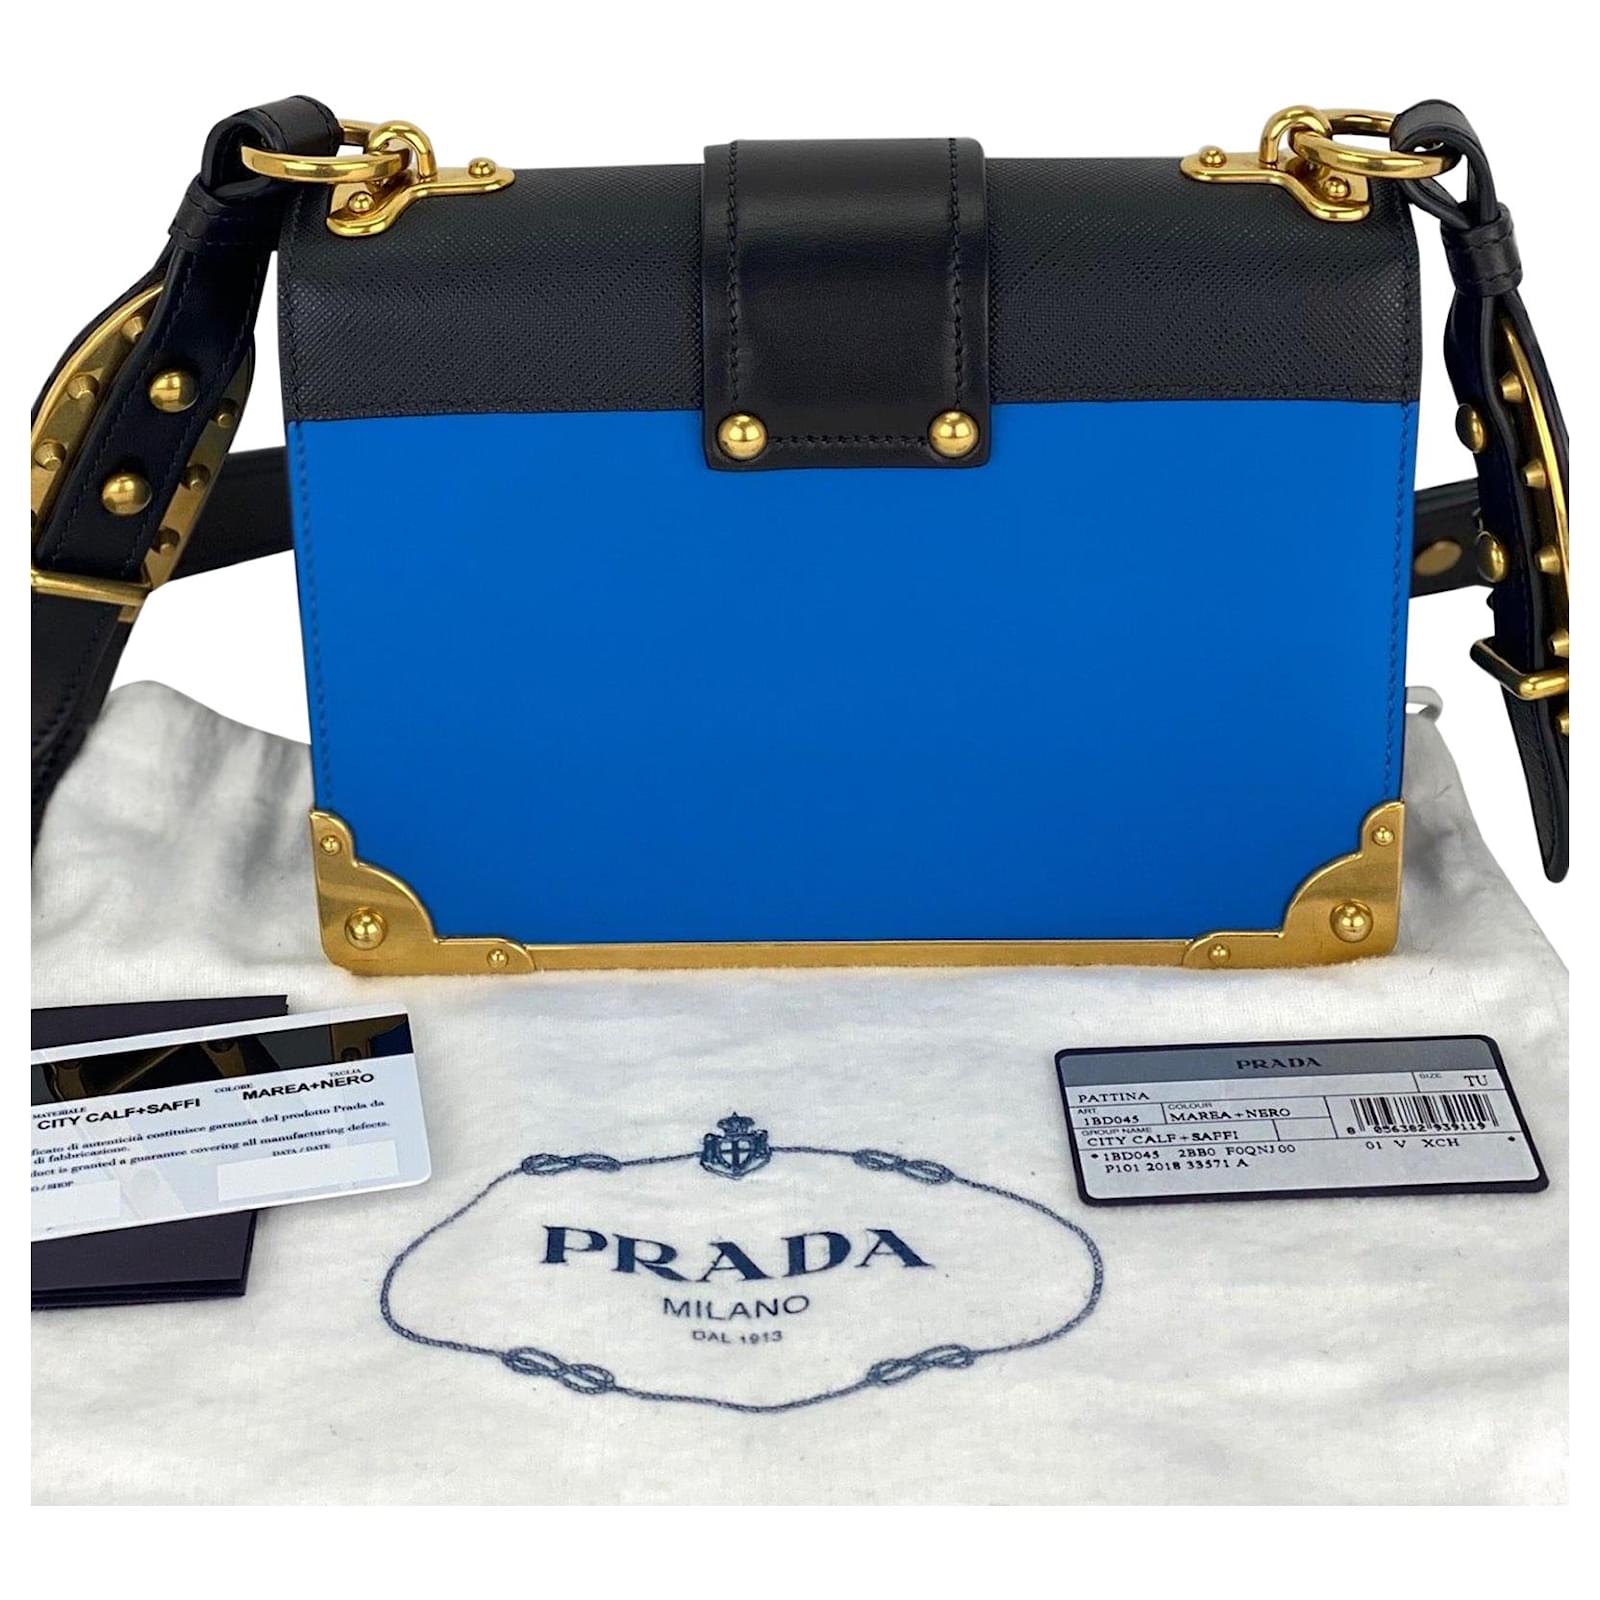 PRADA Cahier City 1BD045 Blue/Black Calfskin Saffiano Shoulder Bag